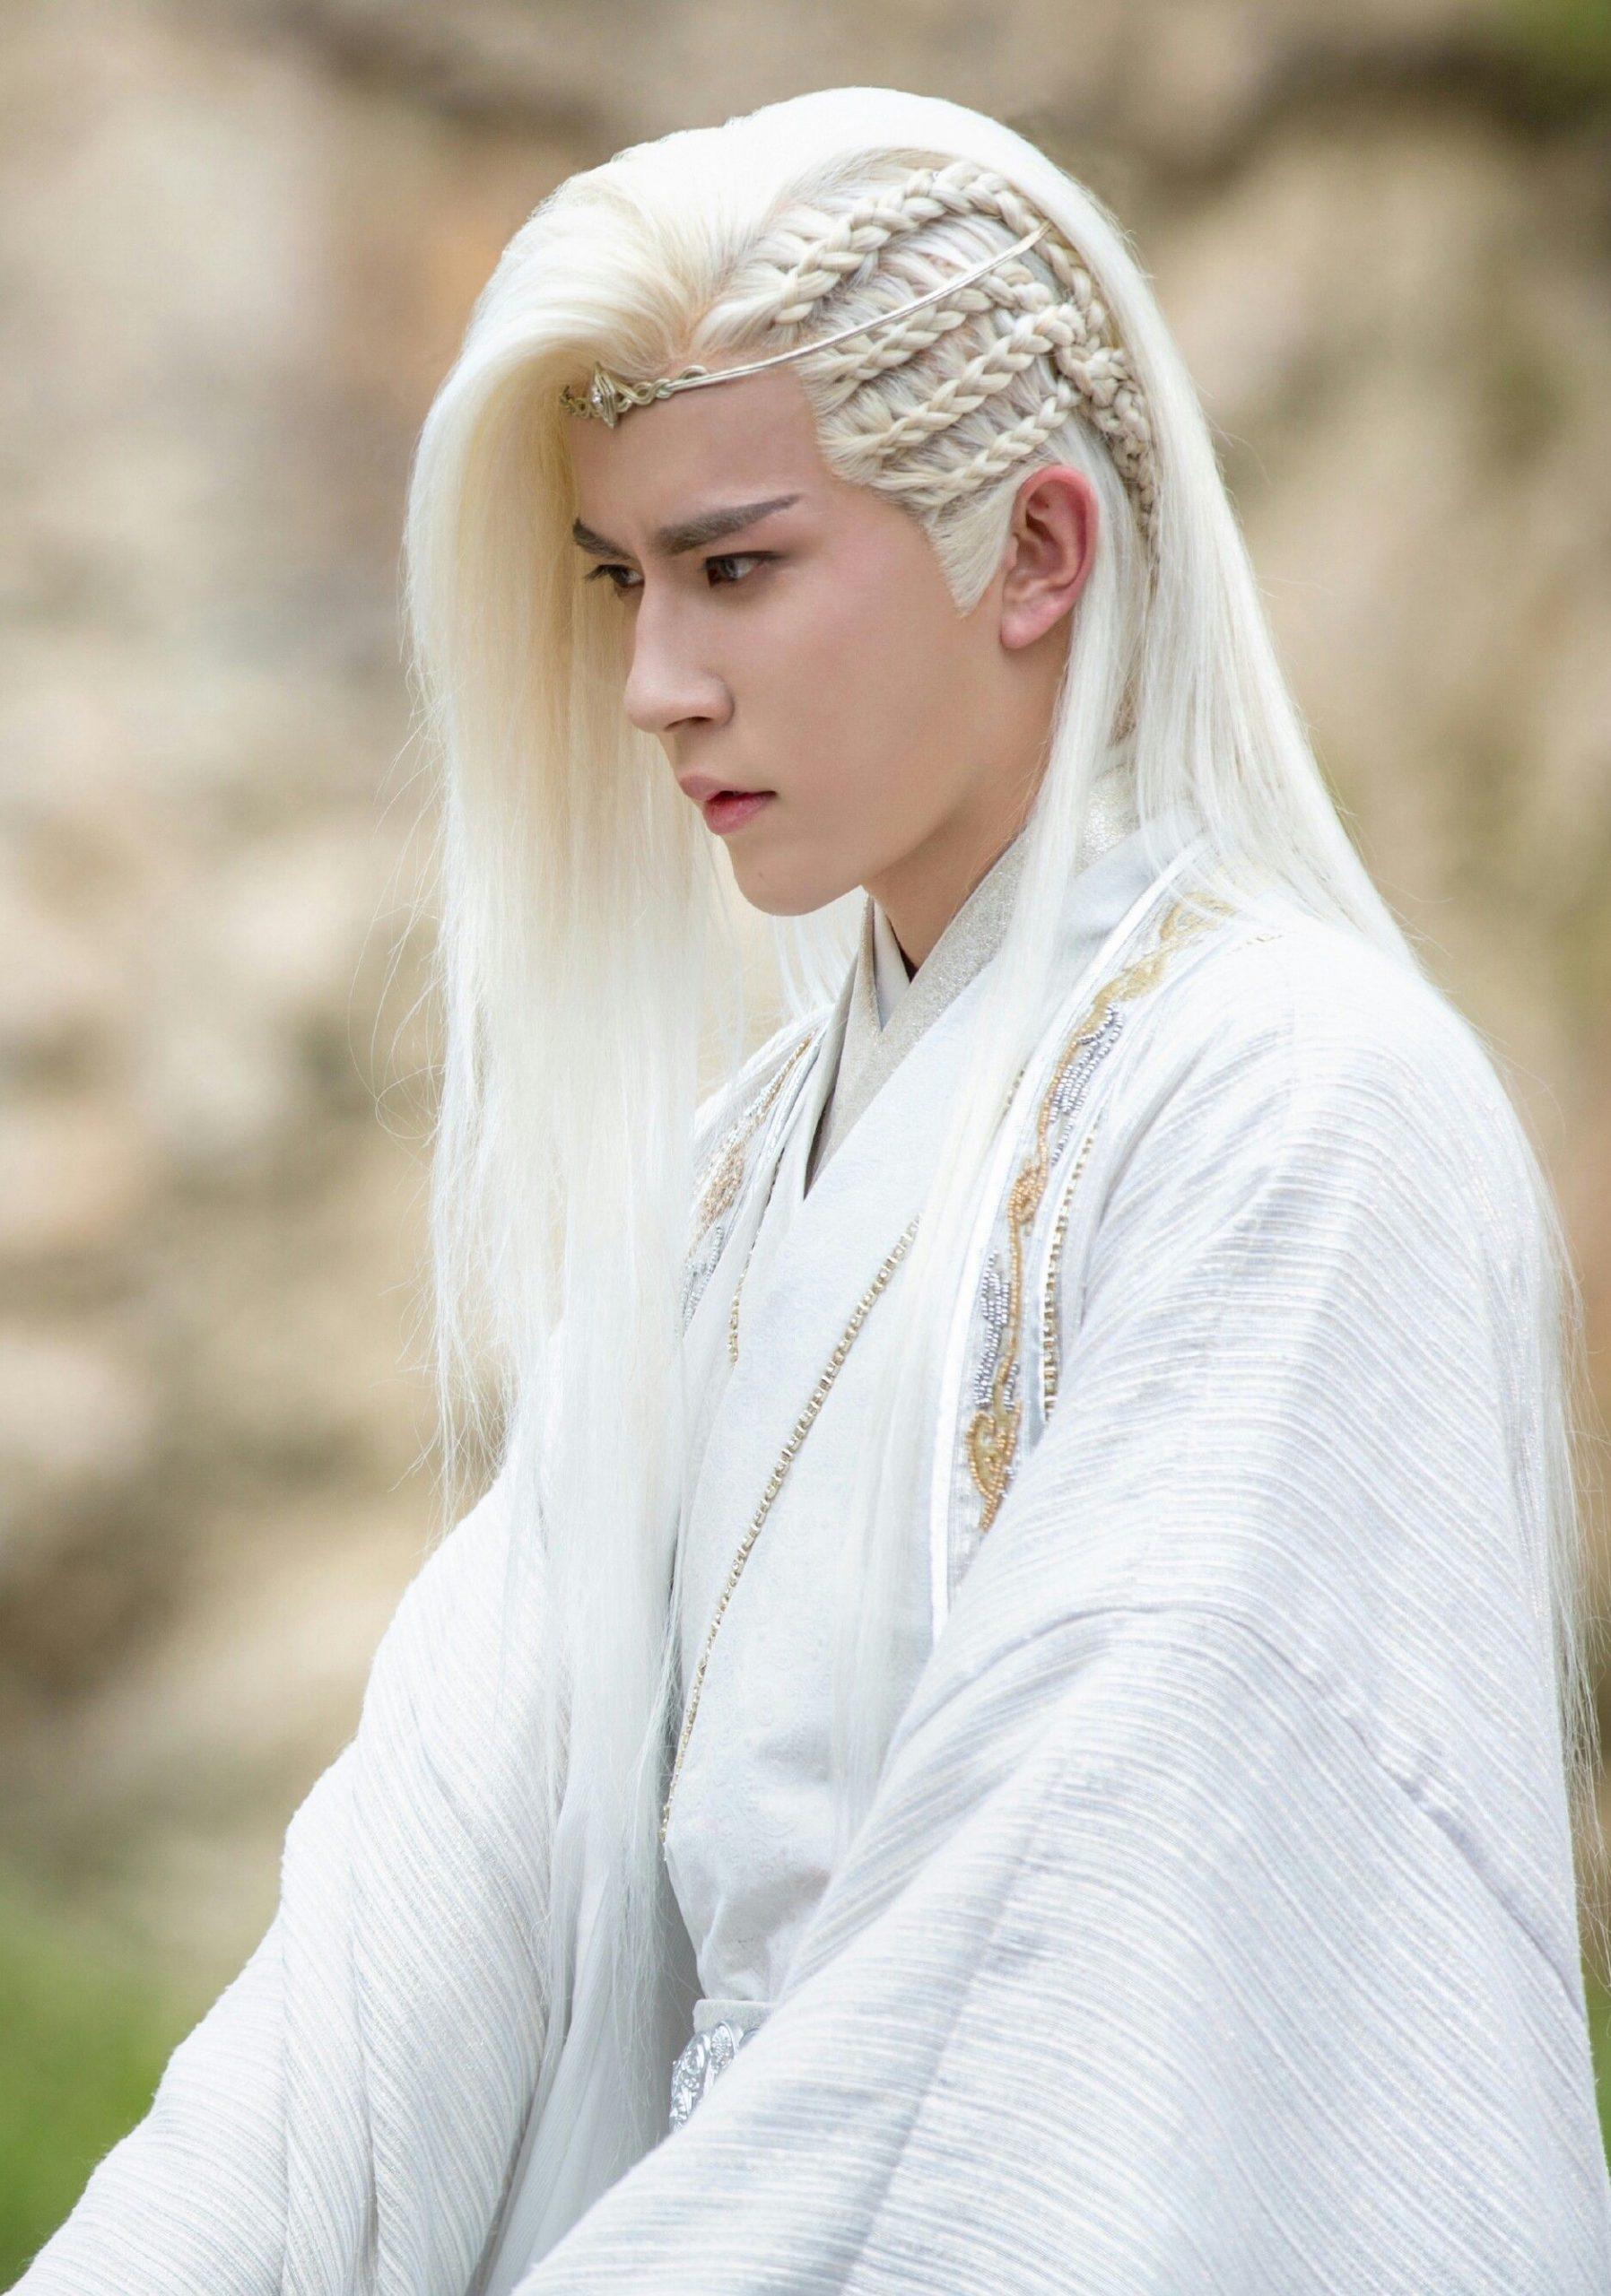 Khám phá vẻ đẹp truyền thống của đàn ông trong trang phục cổ trang nam cùng kiểu tóc trắng điển trai. Hình ảnh sẽ đưa bạn quay trở lại thời đại phồn hoa của Trung Quốc.